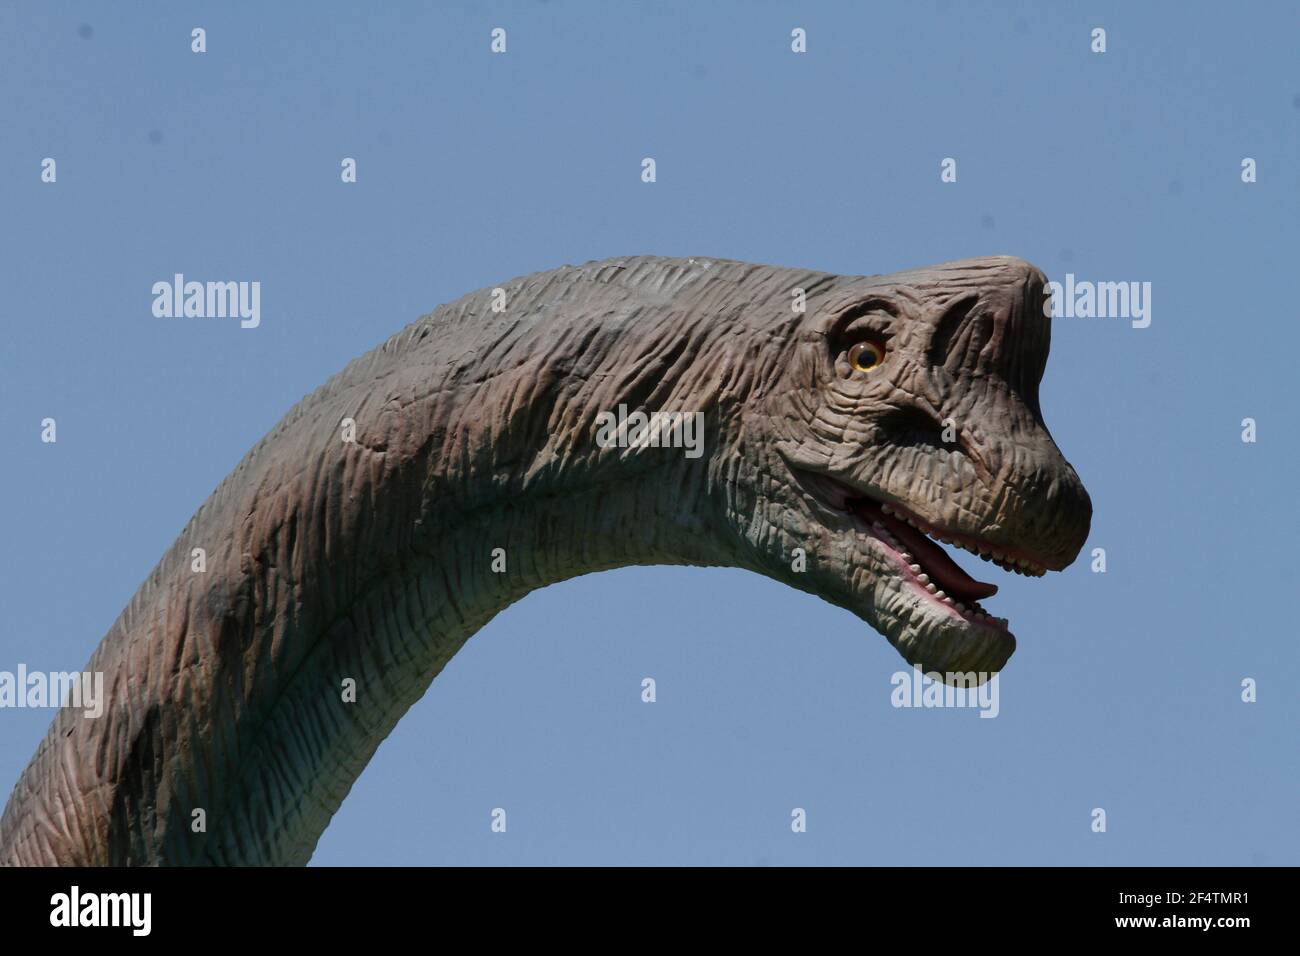 CIUDAD DE MÉXICO, MÉXICO - MARZO 22: Vista general de un dinosaurio durante  la exposición de dinosaurios, presentada por el Alcalde de Iztapalapa en la  Ciudad de México, Clara Brugada en el